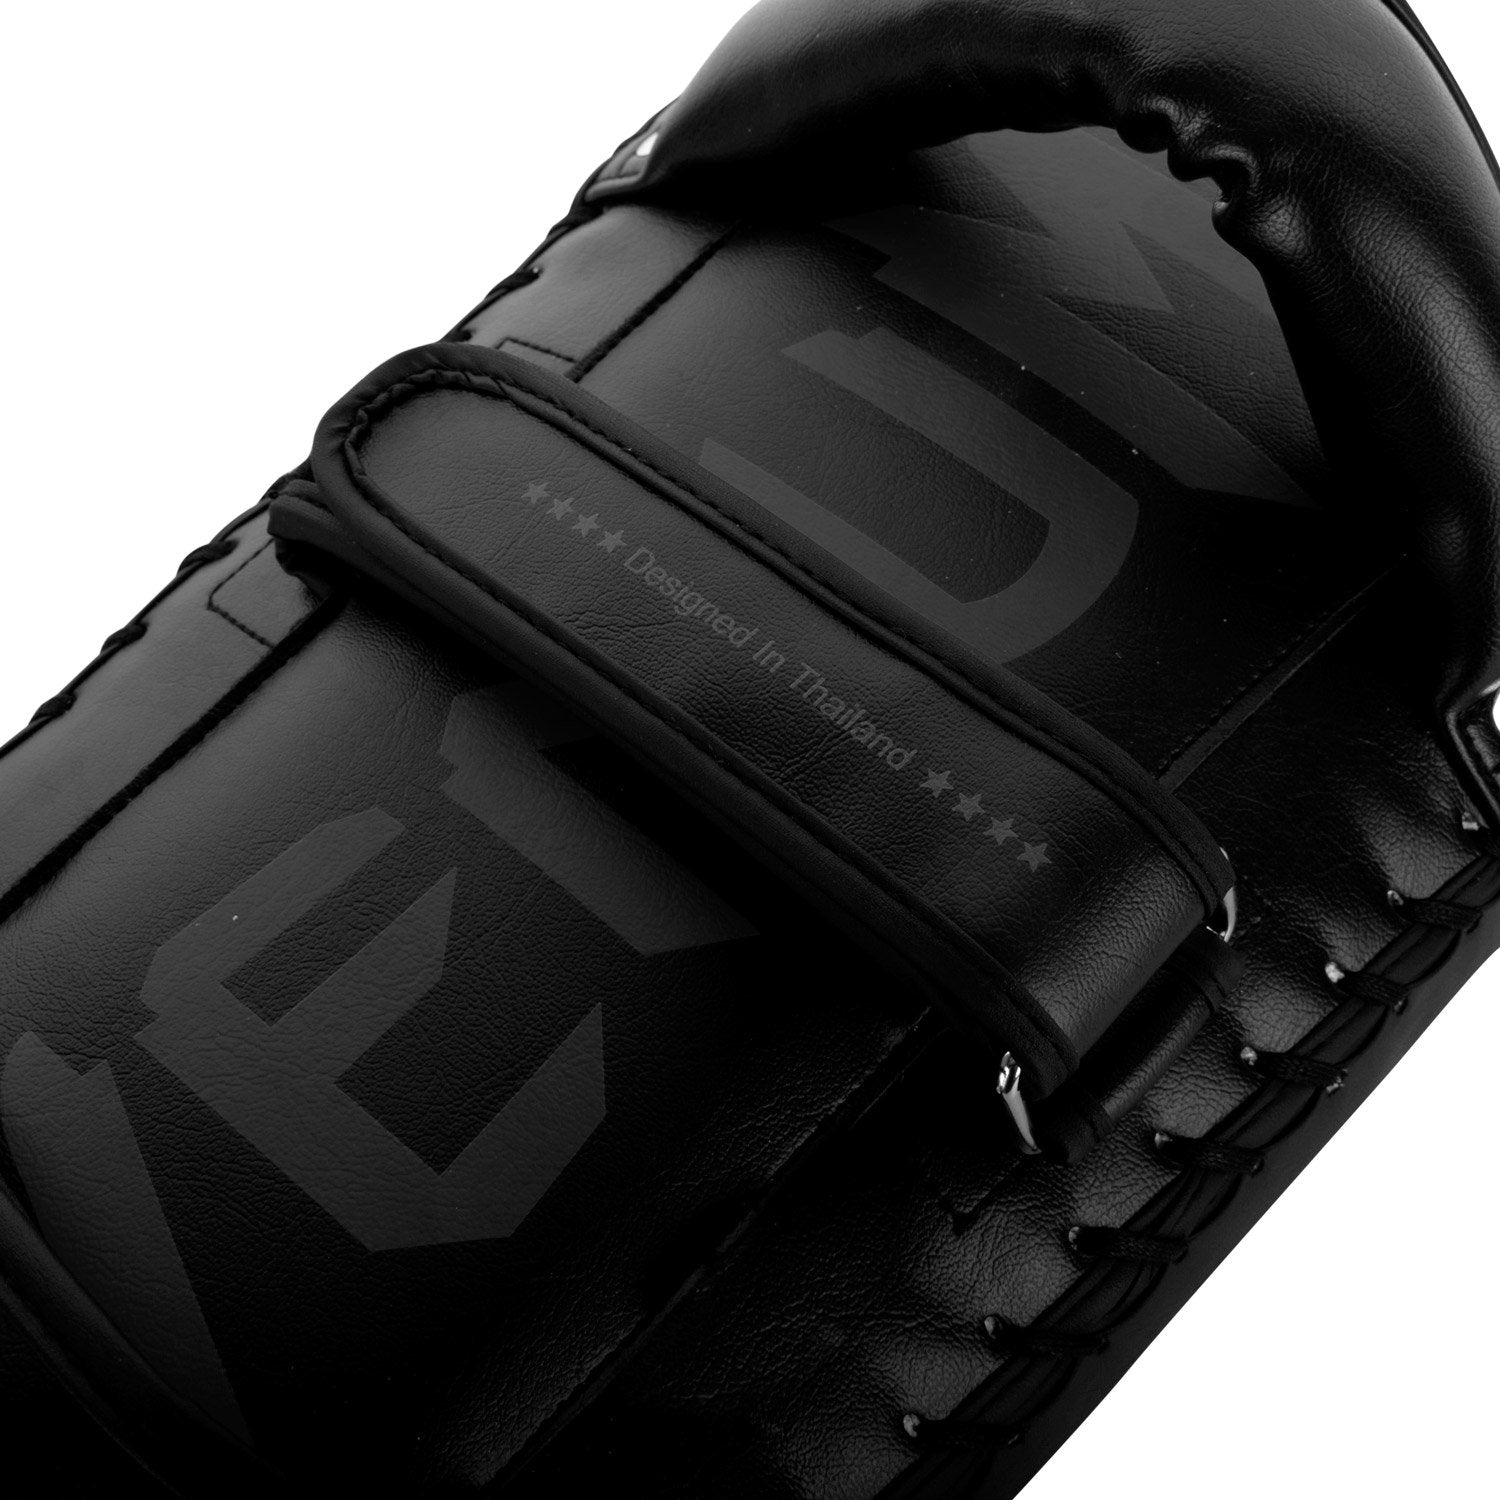 Venum Giant Kick Pads (Pair) - Black/Black - Best Price online Prokicksports.com